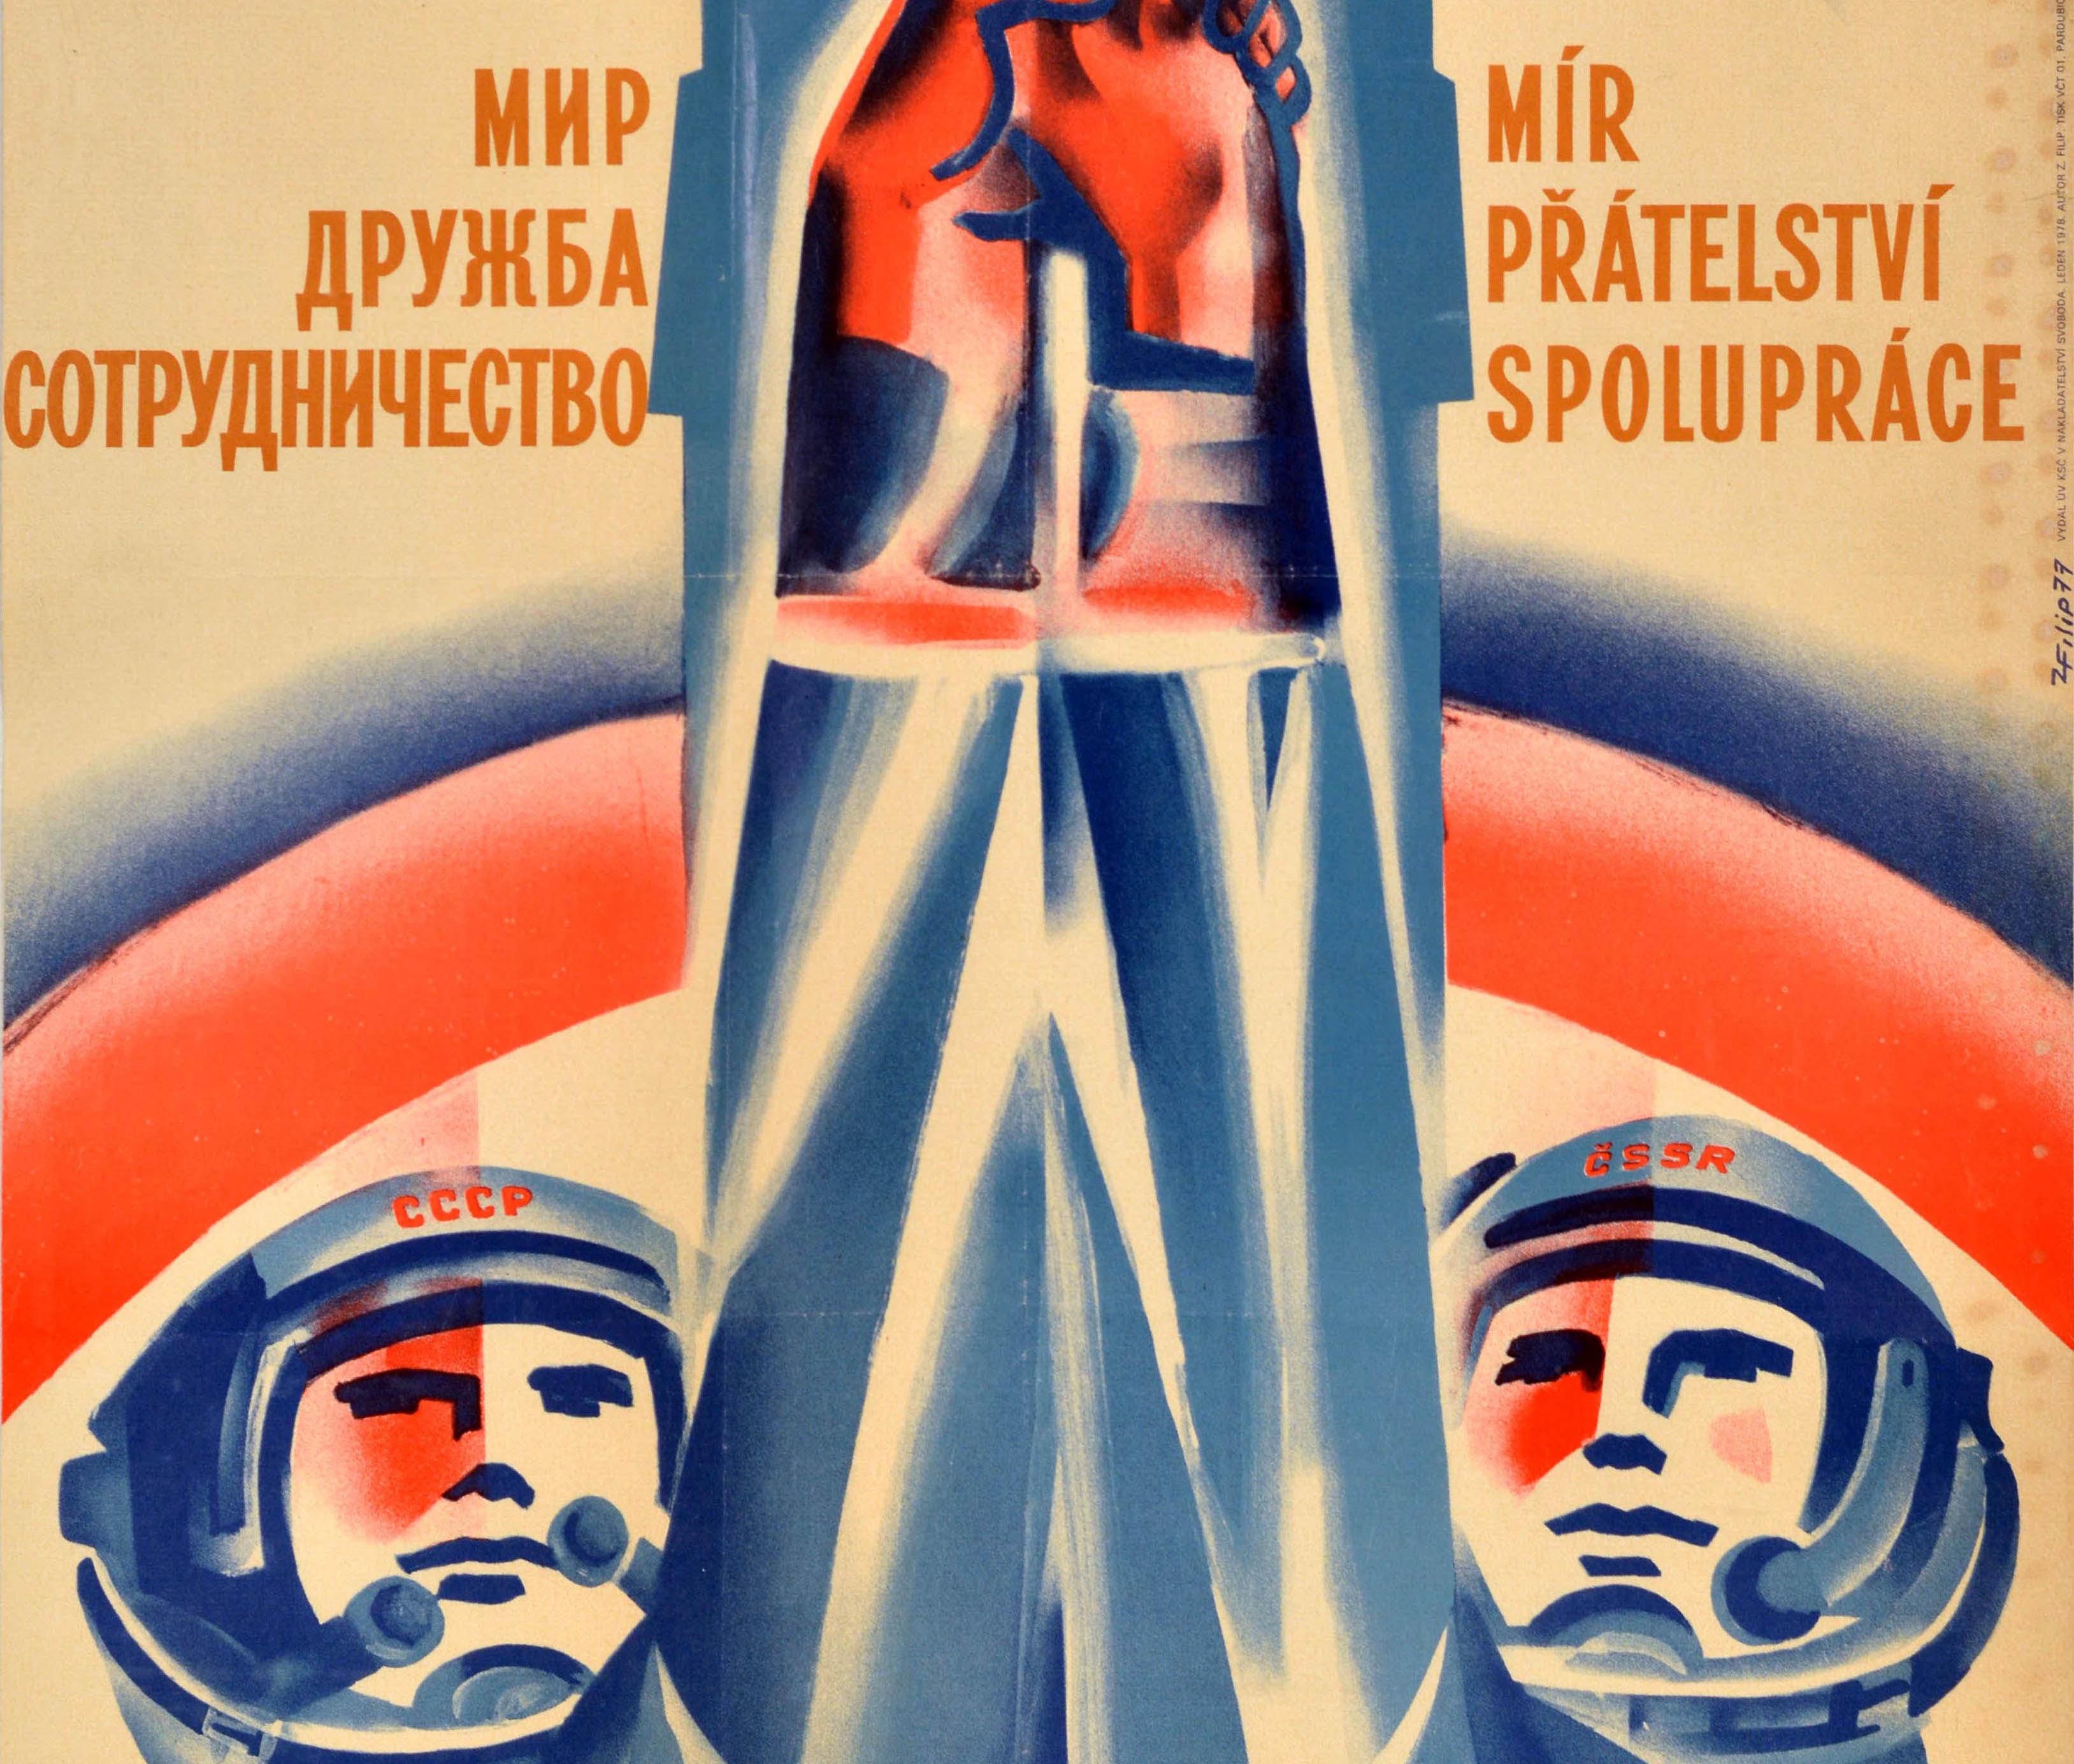 Originales sowjetisches Propagandaplakat im Vintage-Stil mit einer Illustration von zwei Kosmonauten mit UdSSR und Tschechischer SSR auf den Helmen ihrer Raumanzüge, die sich vor einer Rakete im Hintergrund die Hände reichen, mit der Aufschrift in